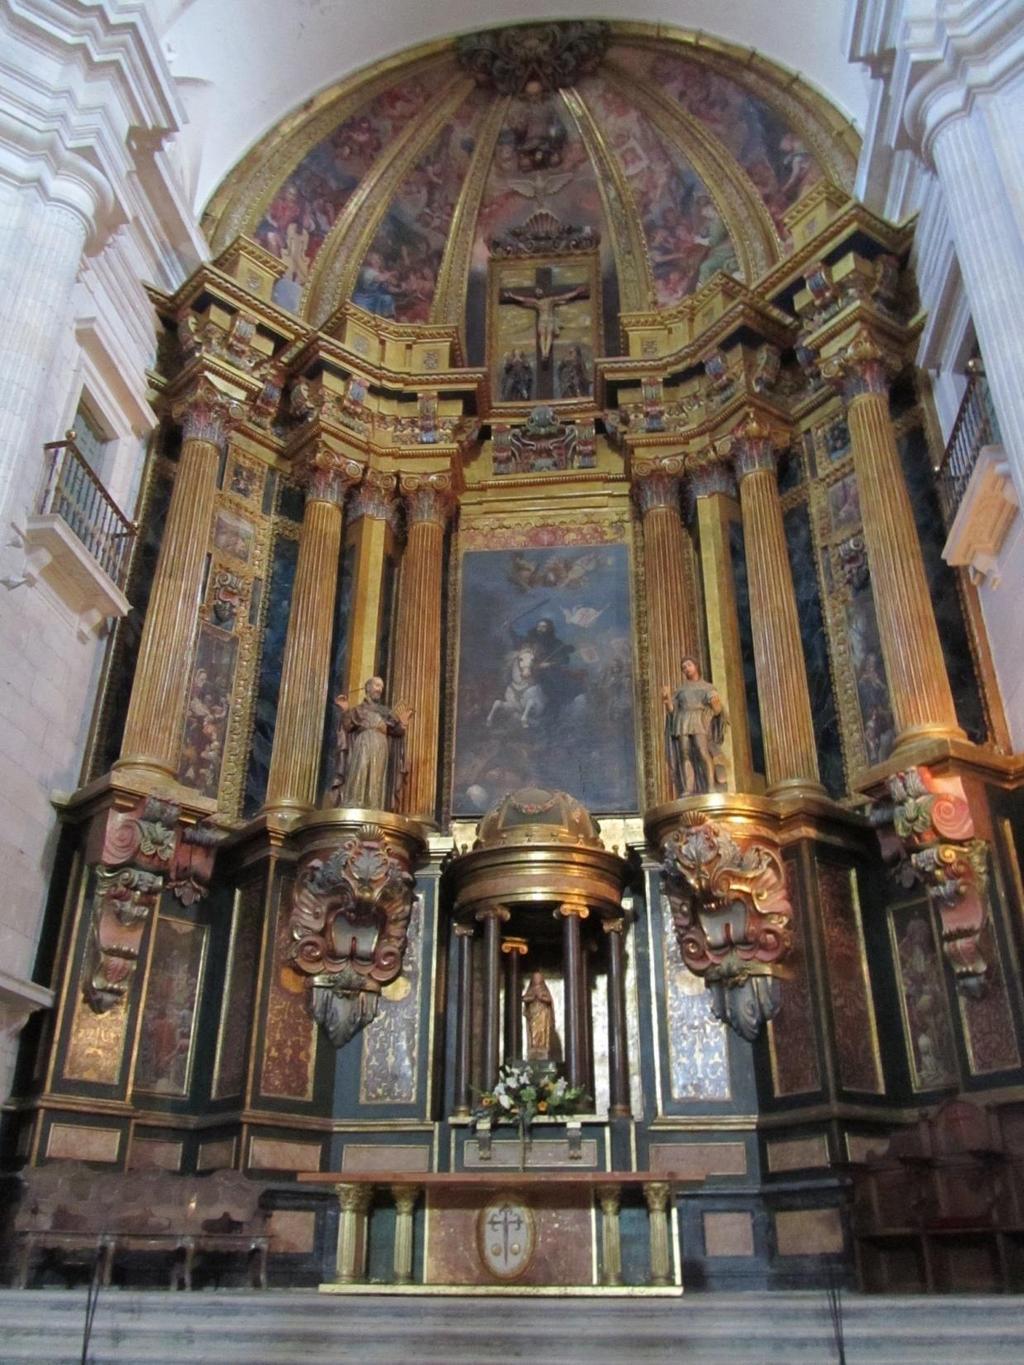 El retablo mayor es de estilo greco-romano con tendencias barrocas. Fue encargado a Francisco García Dardero. Del original sólo se conservan restos en su parte superior.